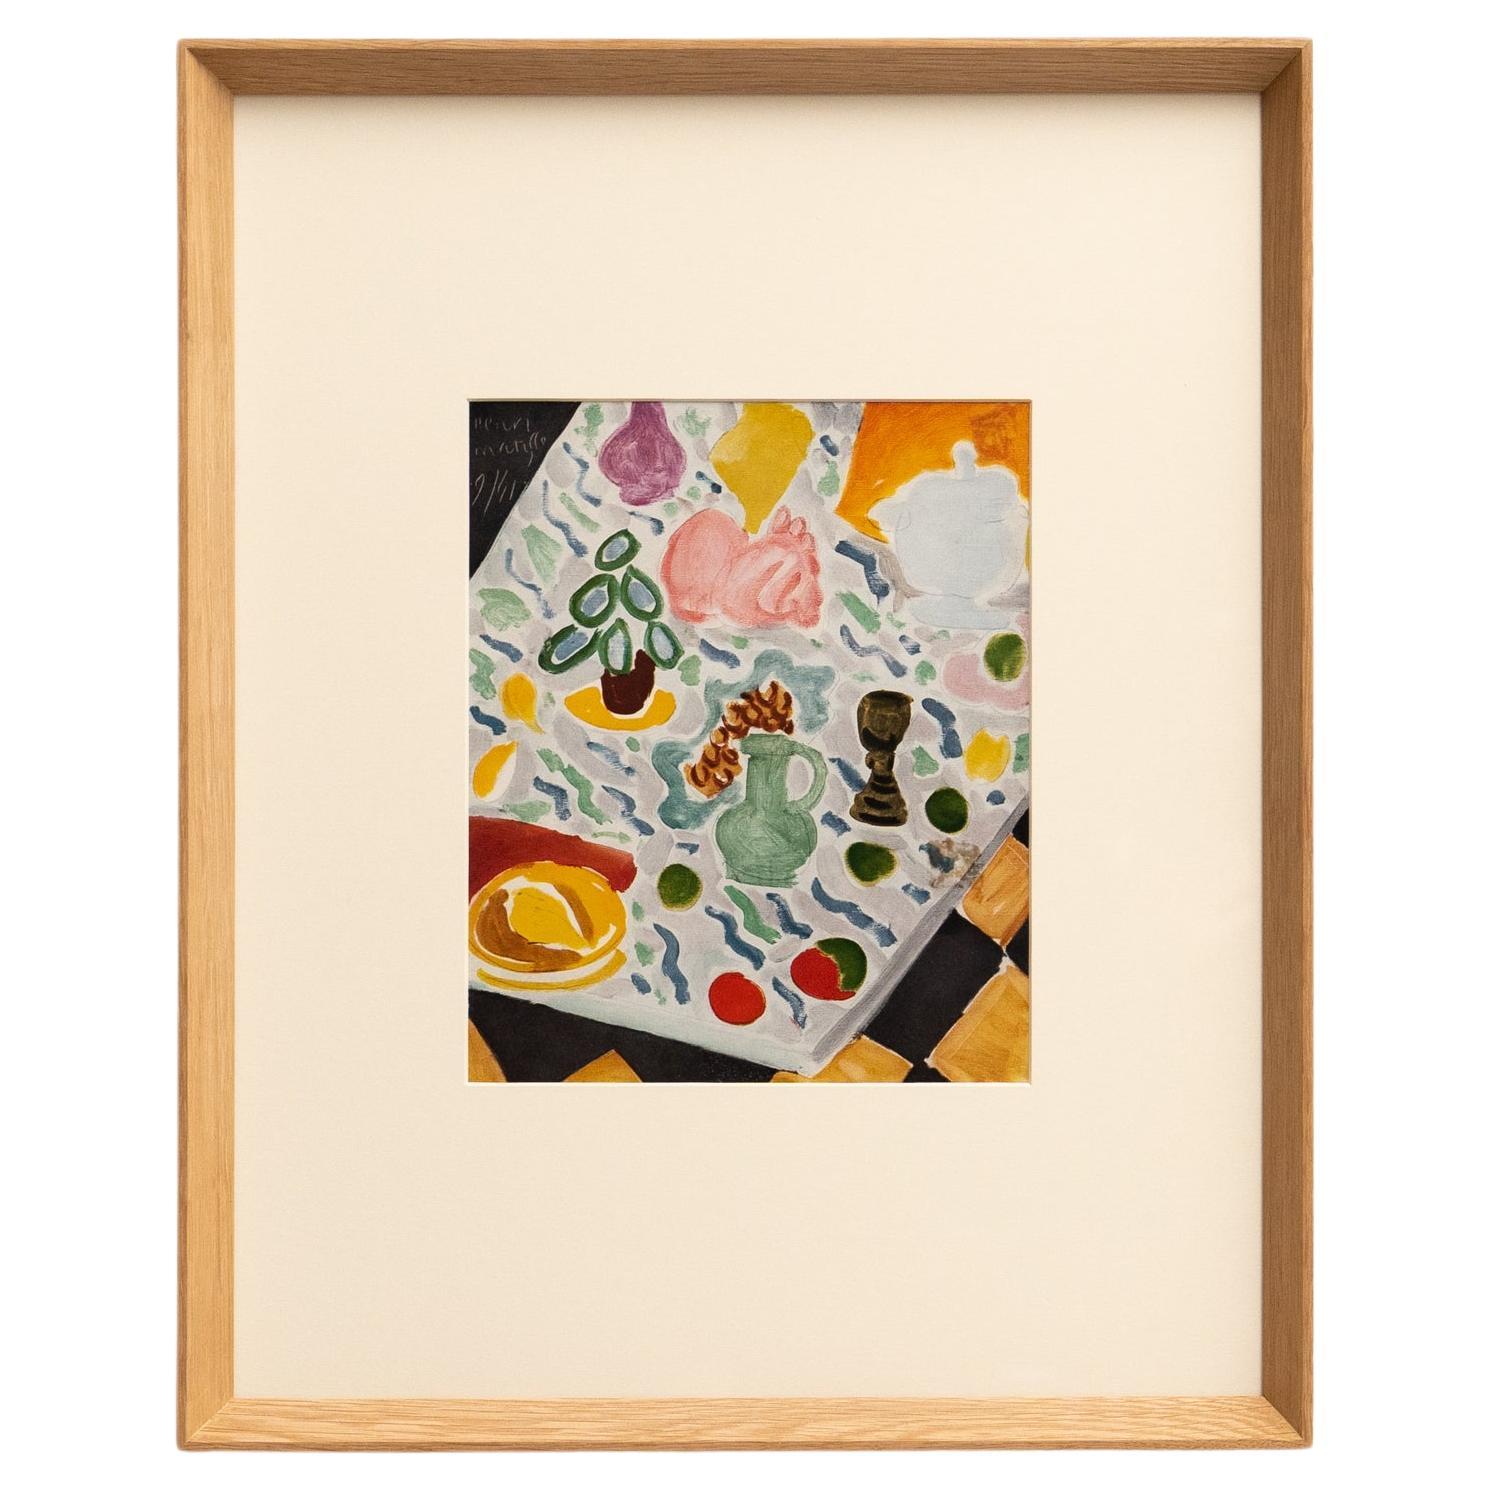 Rare Color Lithograph: A Glimpse into Matisse's Artistic Mastery